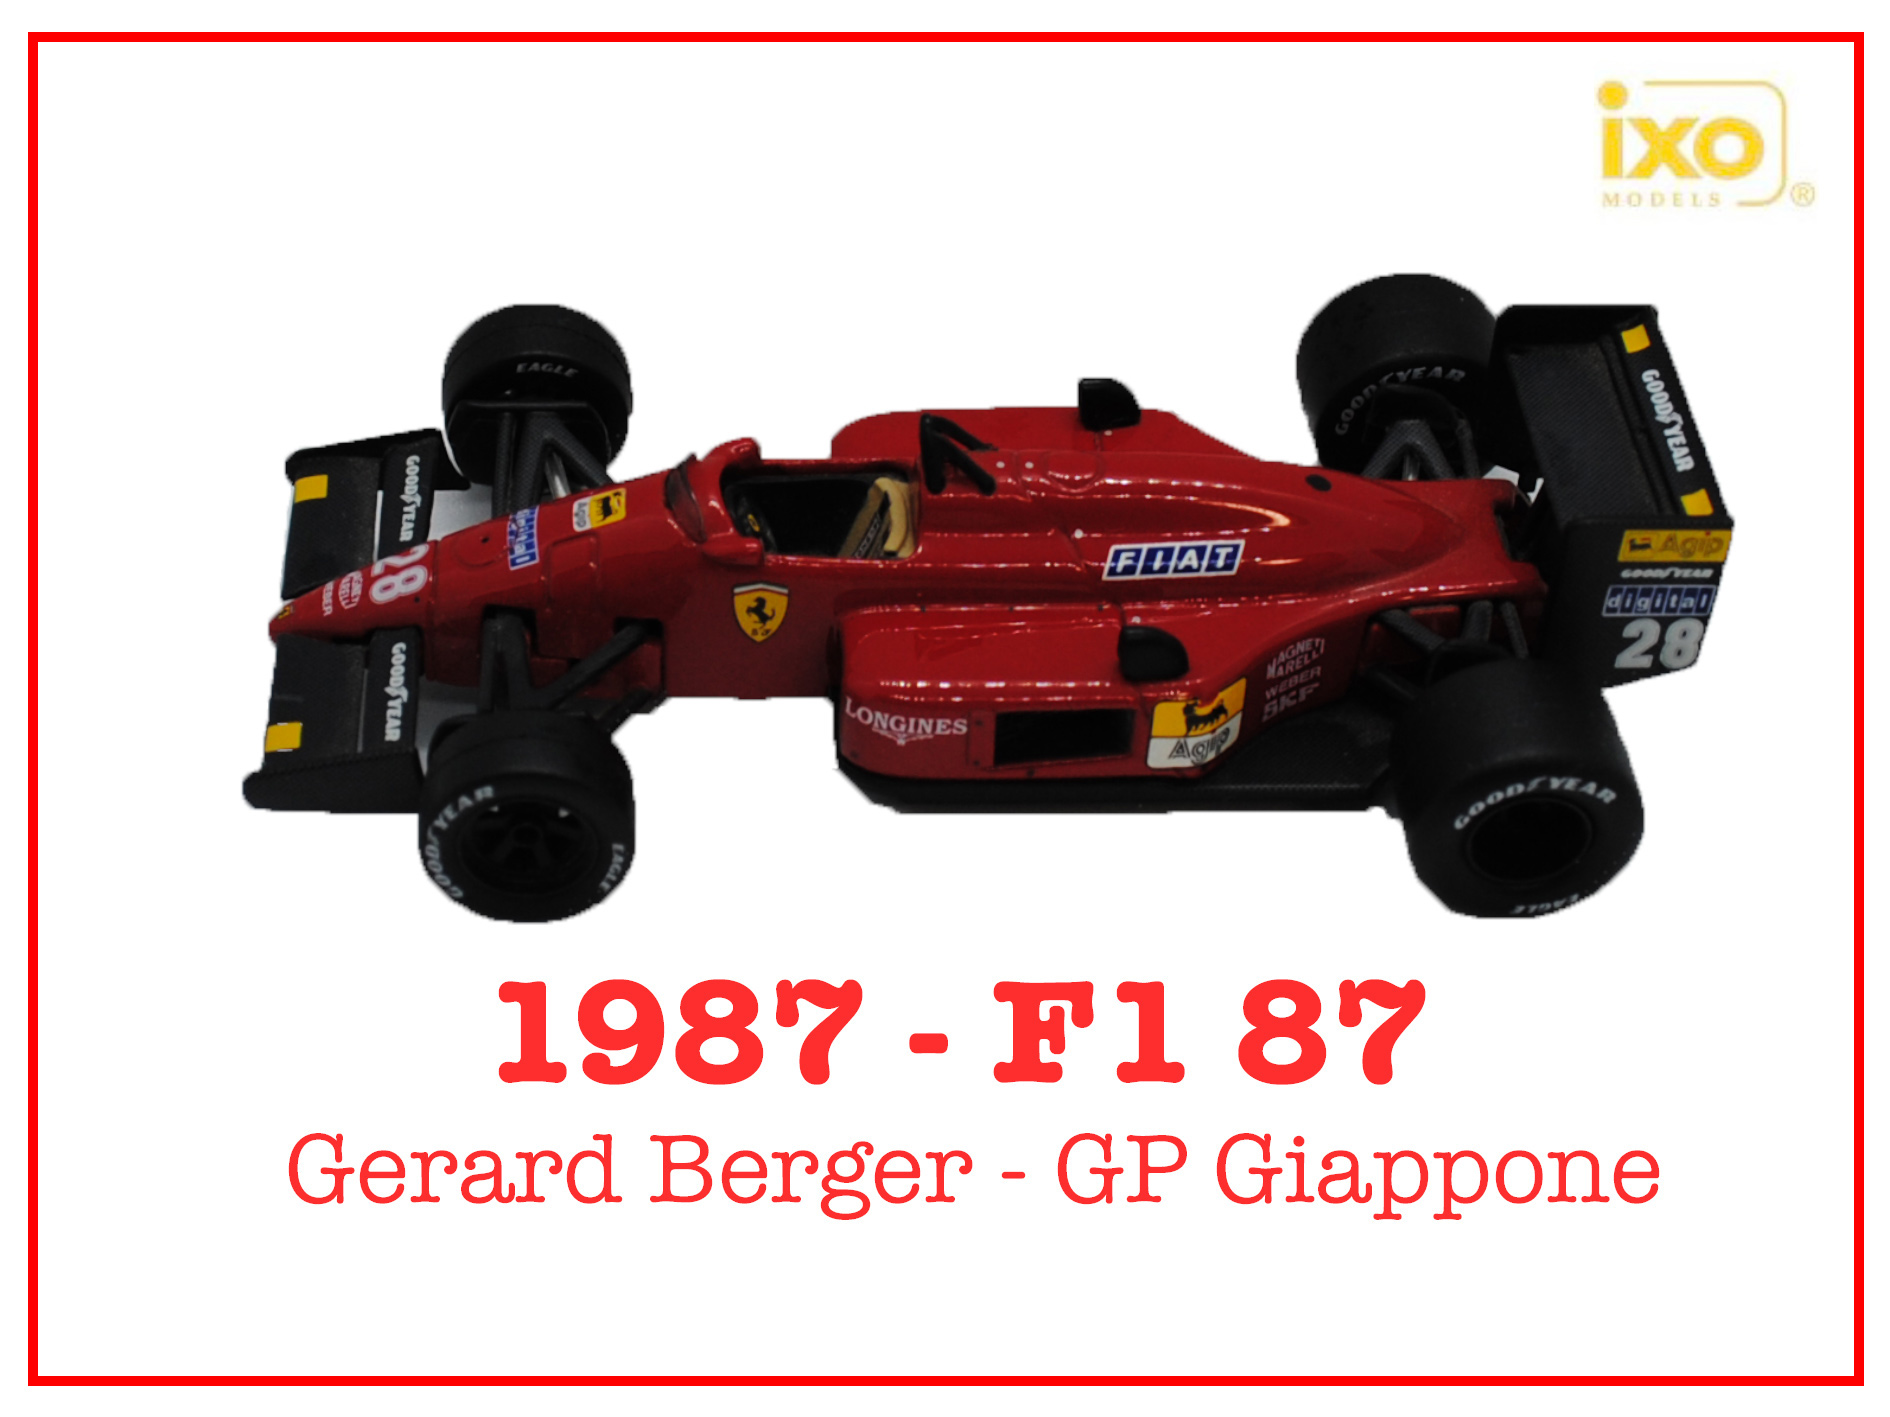 Immagine 1987 - F1-87 - Gerard Berger GP Giappone